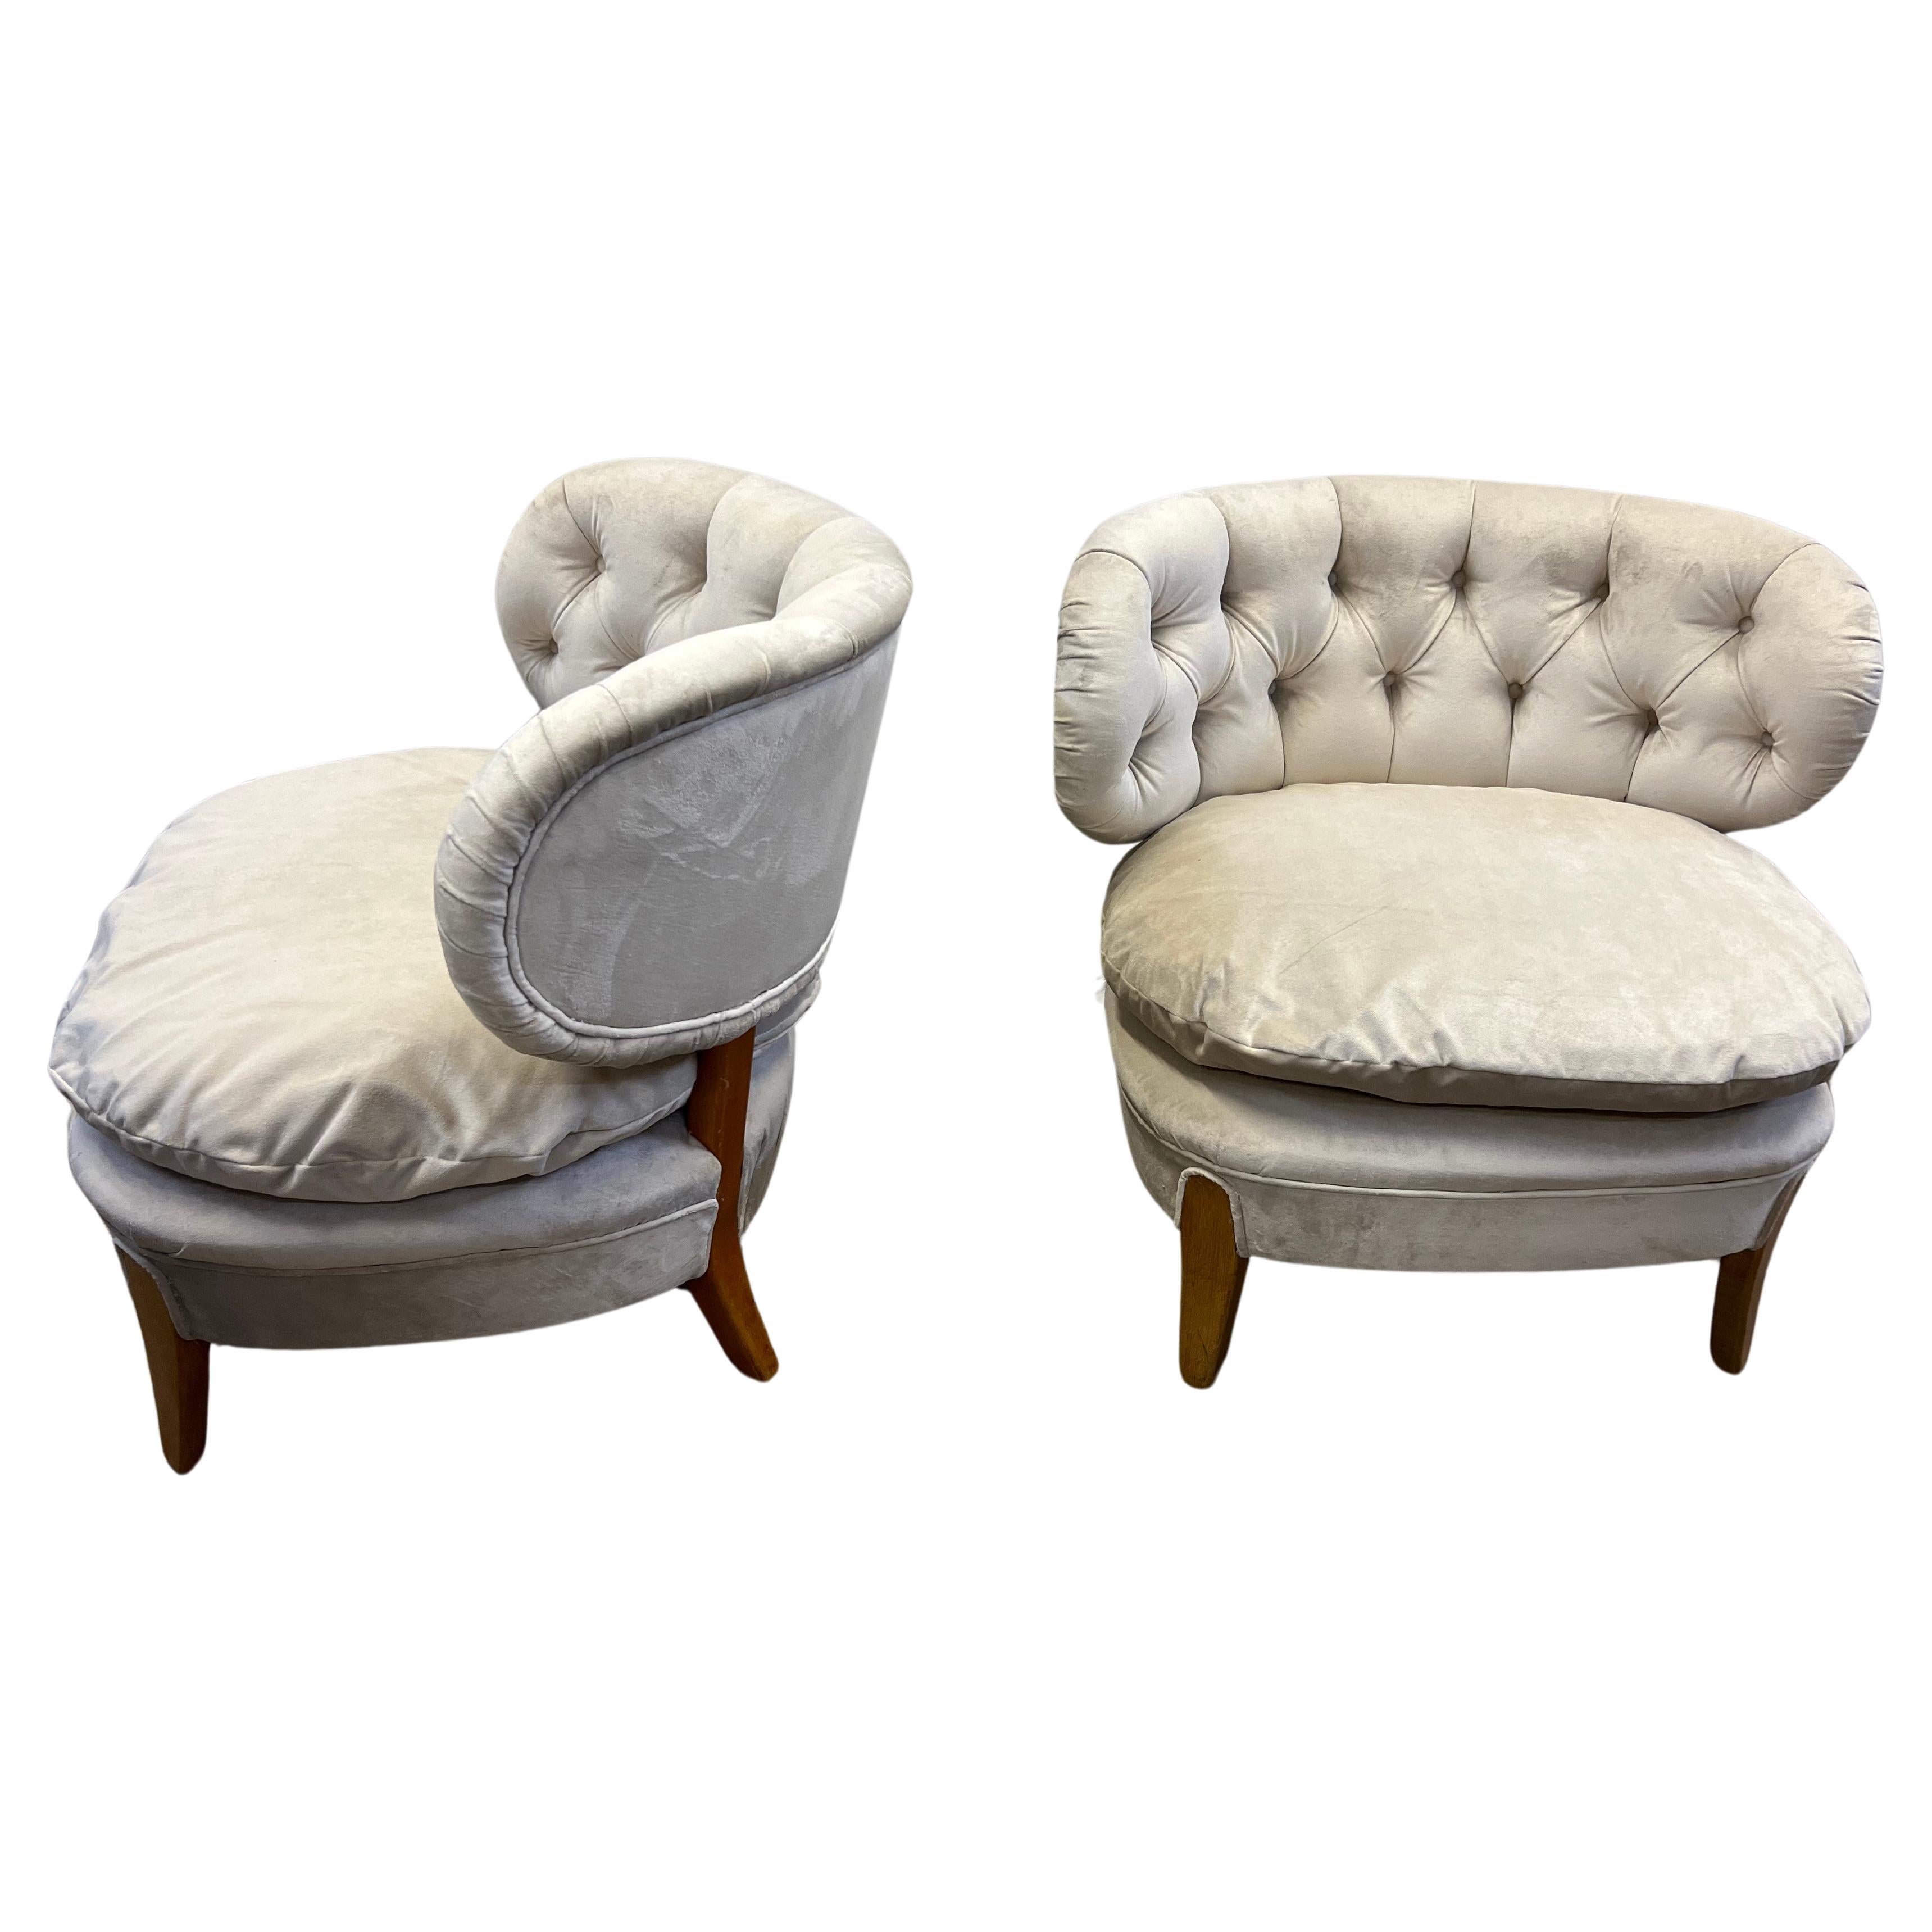 Quelle belle paire de chaises Otto Schultz originales qui ont été récemment retapissées avec un coussin libre dans un luxueux velours couleur taupe ! Ils sont littéralement prêts à être utilisés dans n'importe quel espace design, qu'il soit